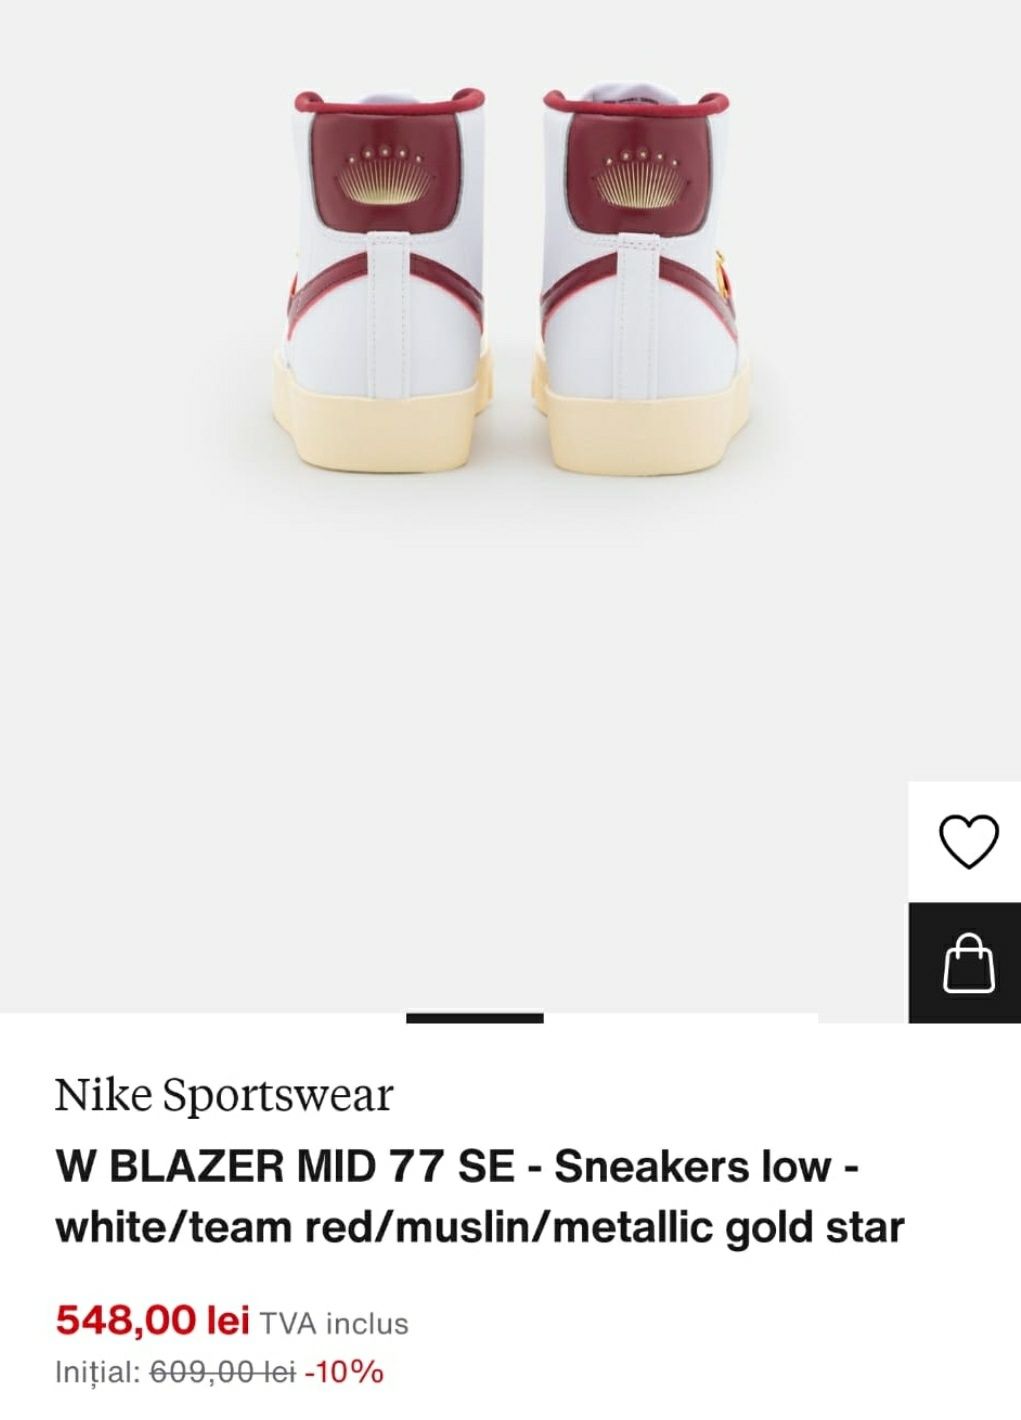 Adidasi Nike Blazer Mid 77 masura 37,5